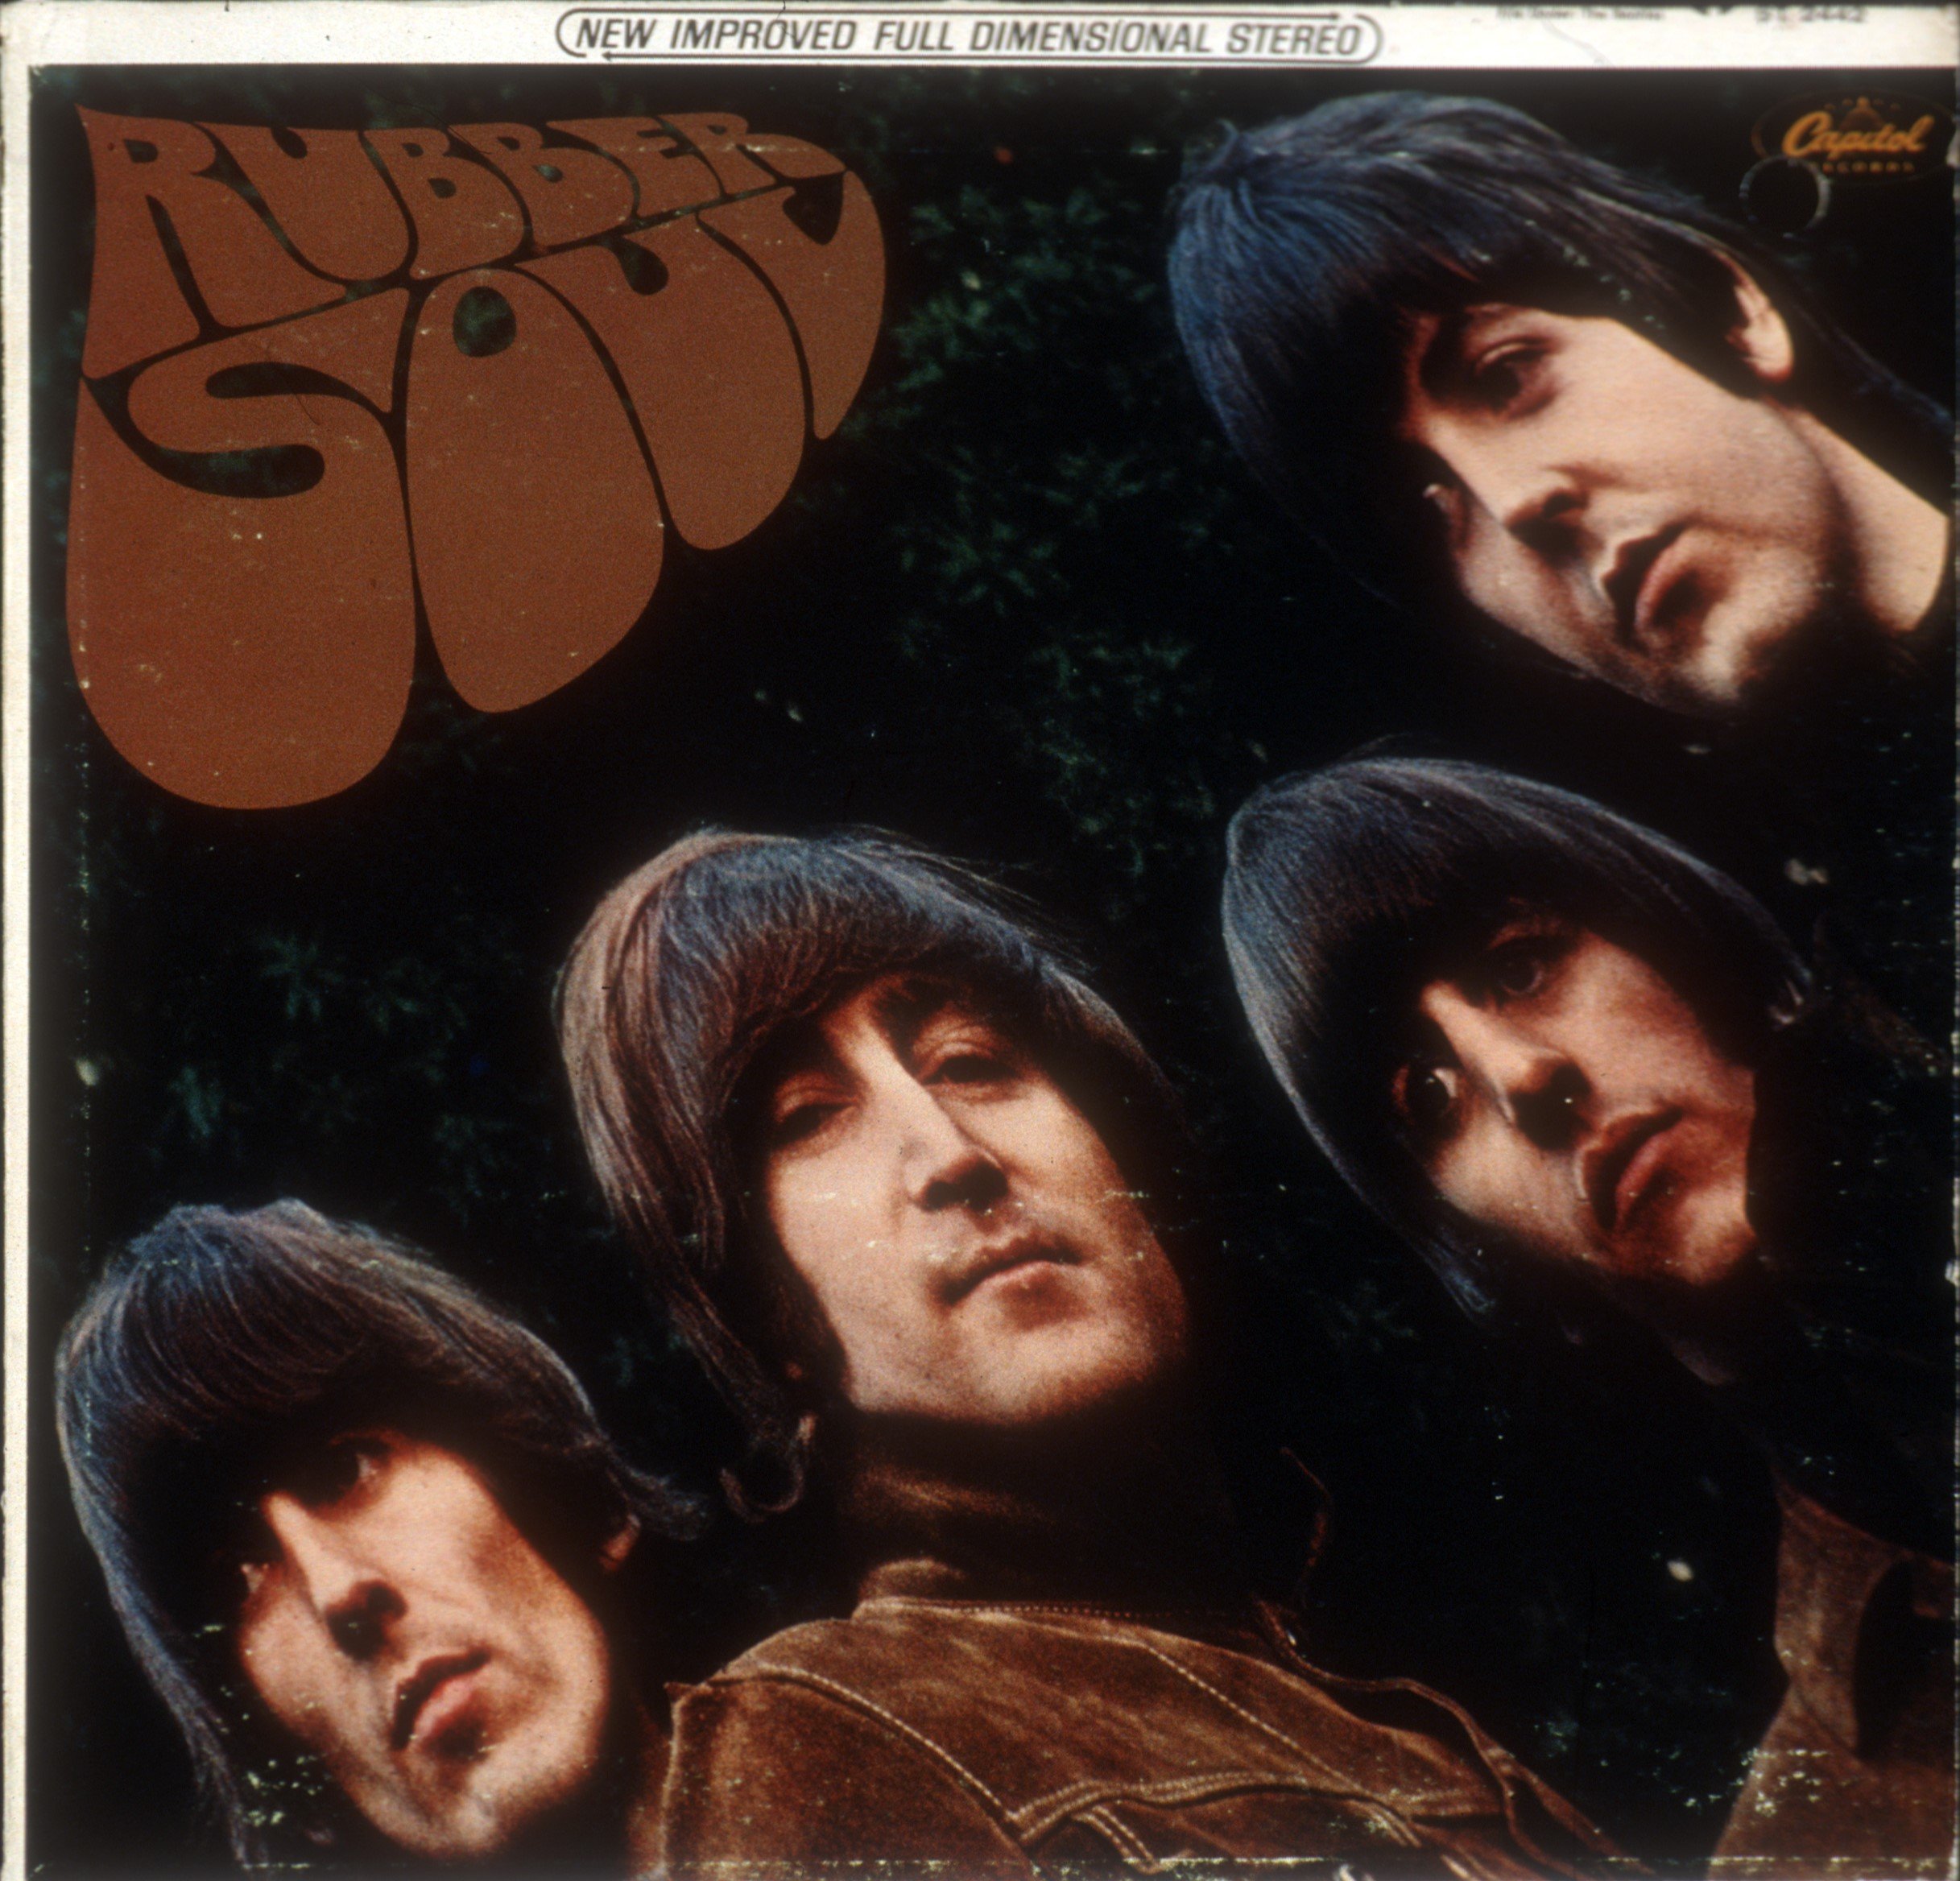 A vinyl copy of The Beatles' 'Rubber Soul'